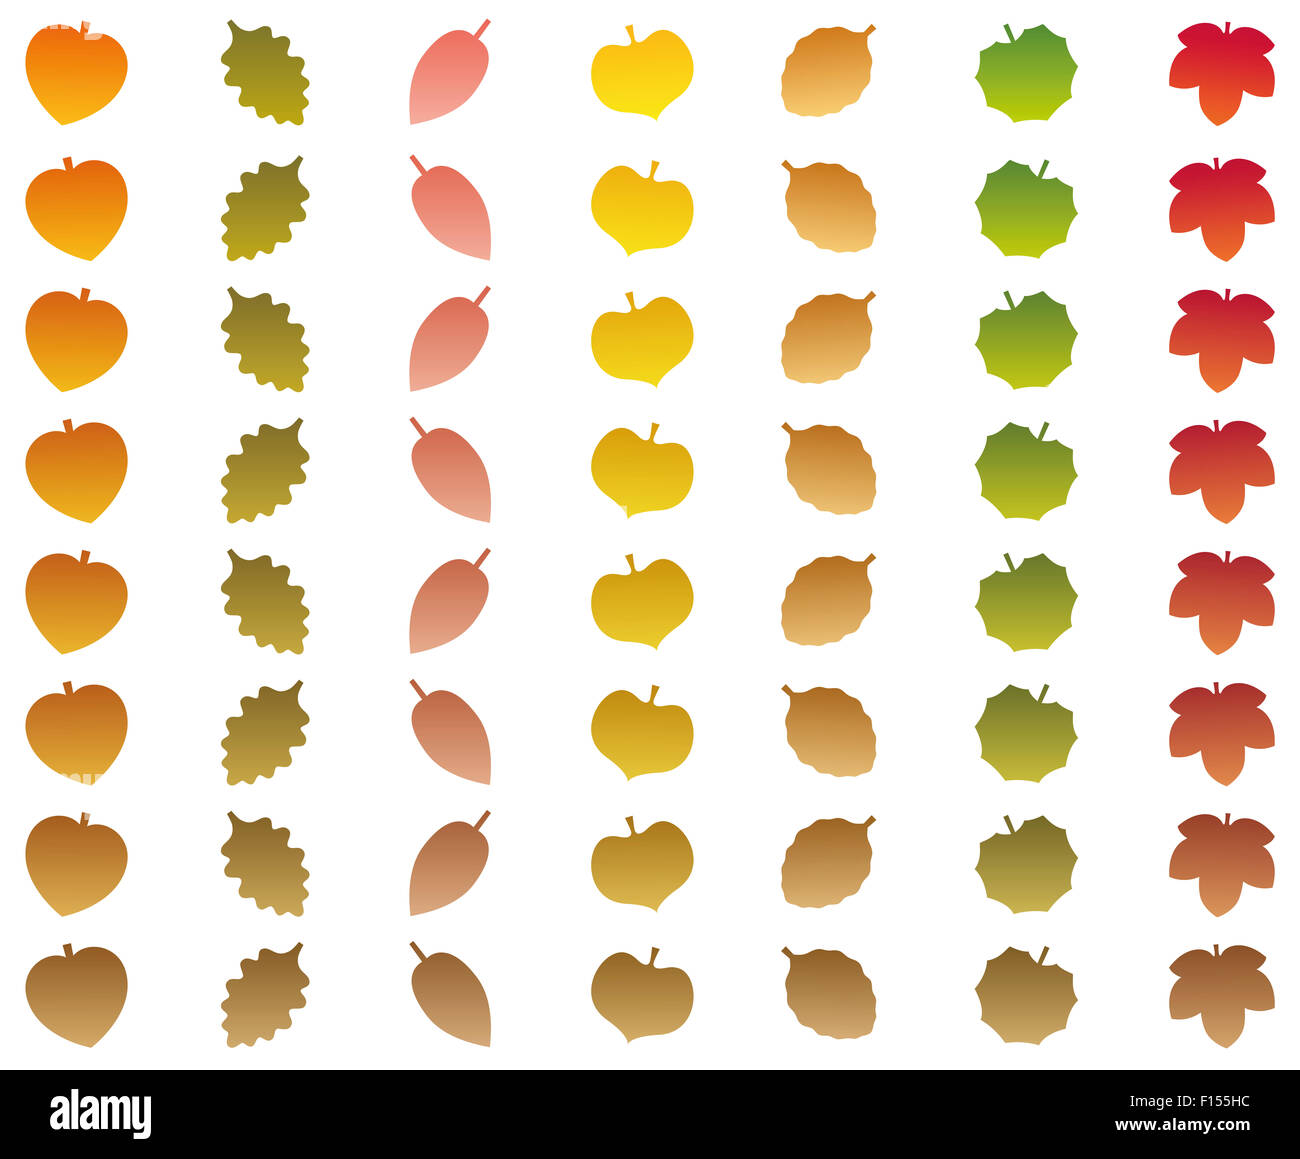 Blätter, das Ändern von Farben des Herbstes in vertrocknete braunen Farbe beim Herunterfallen. Abbildung auf weißem Hintergrund. Stockfoto